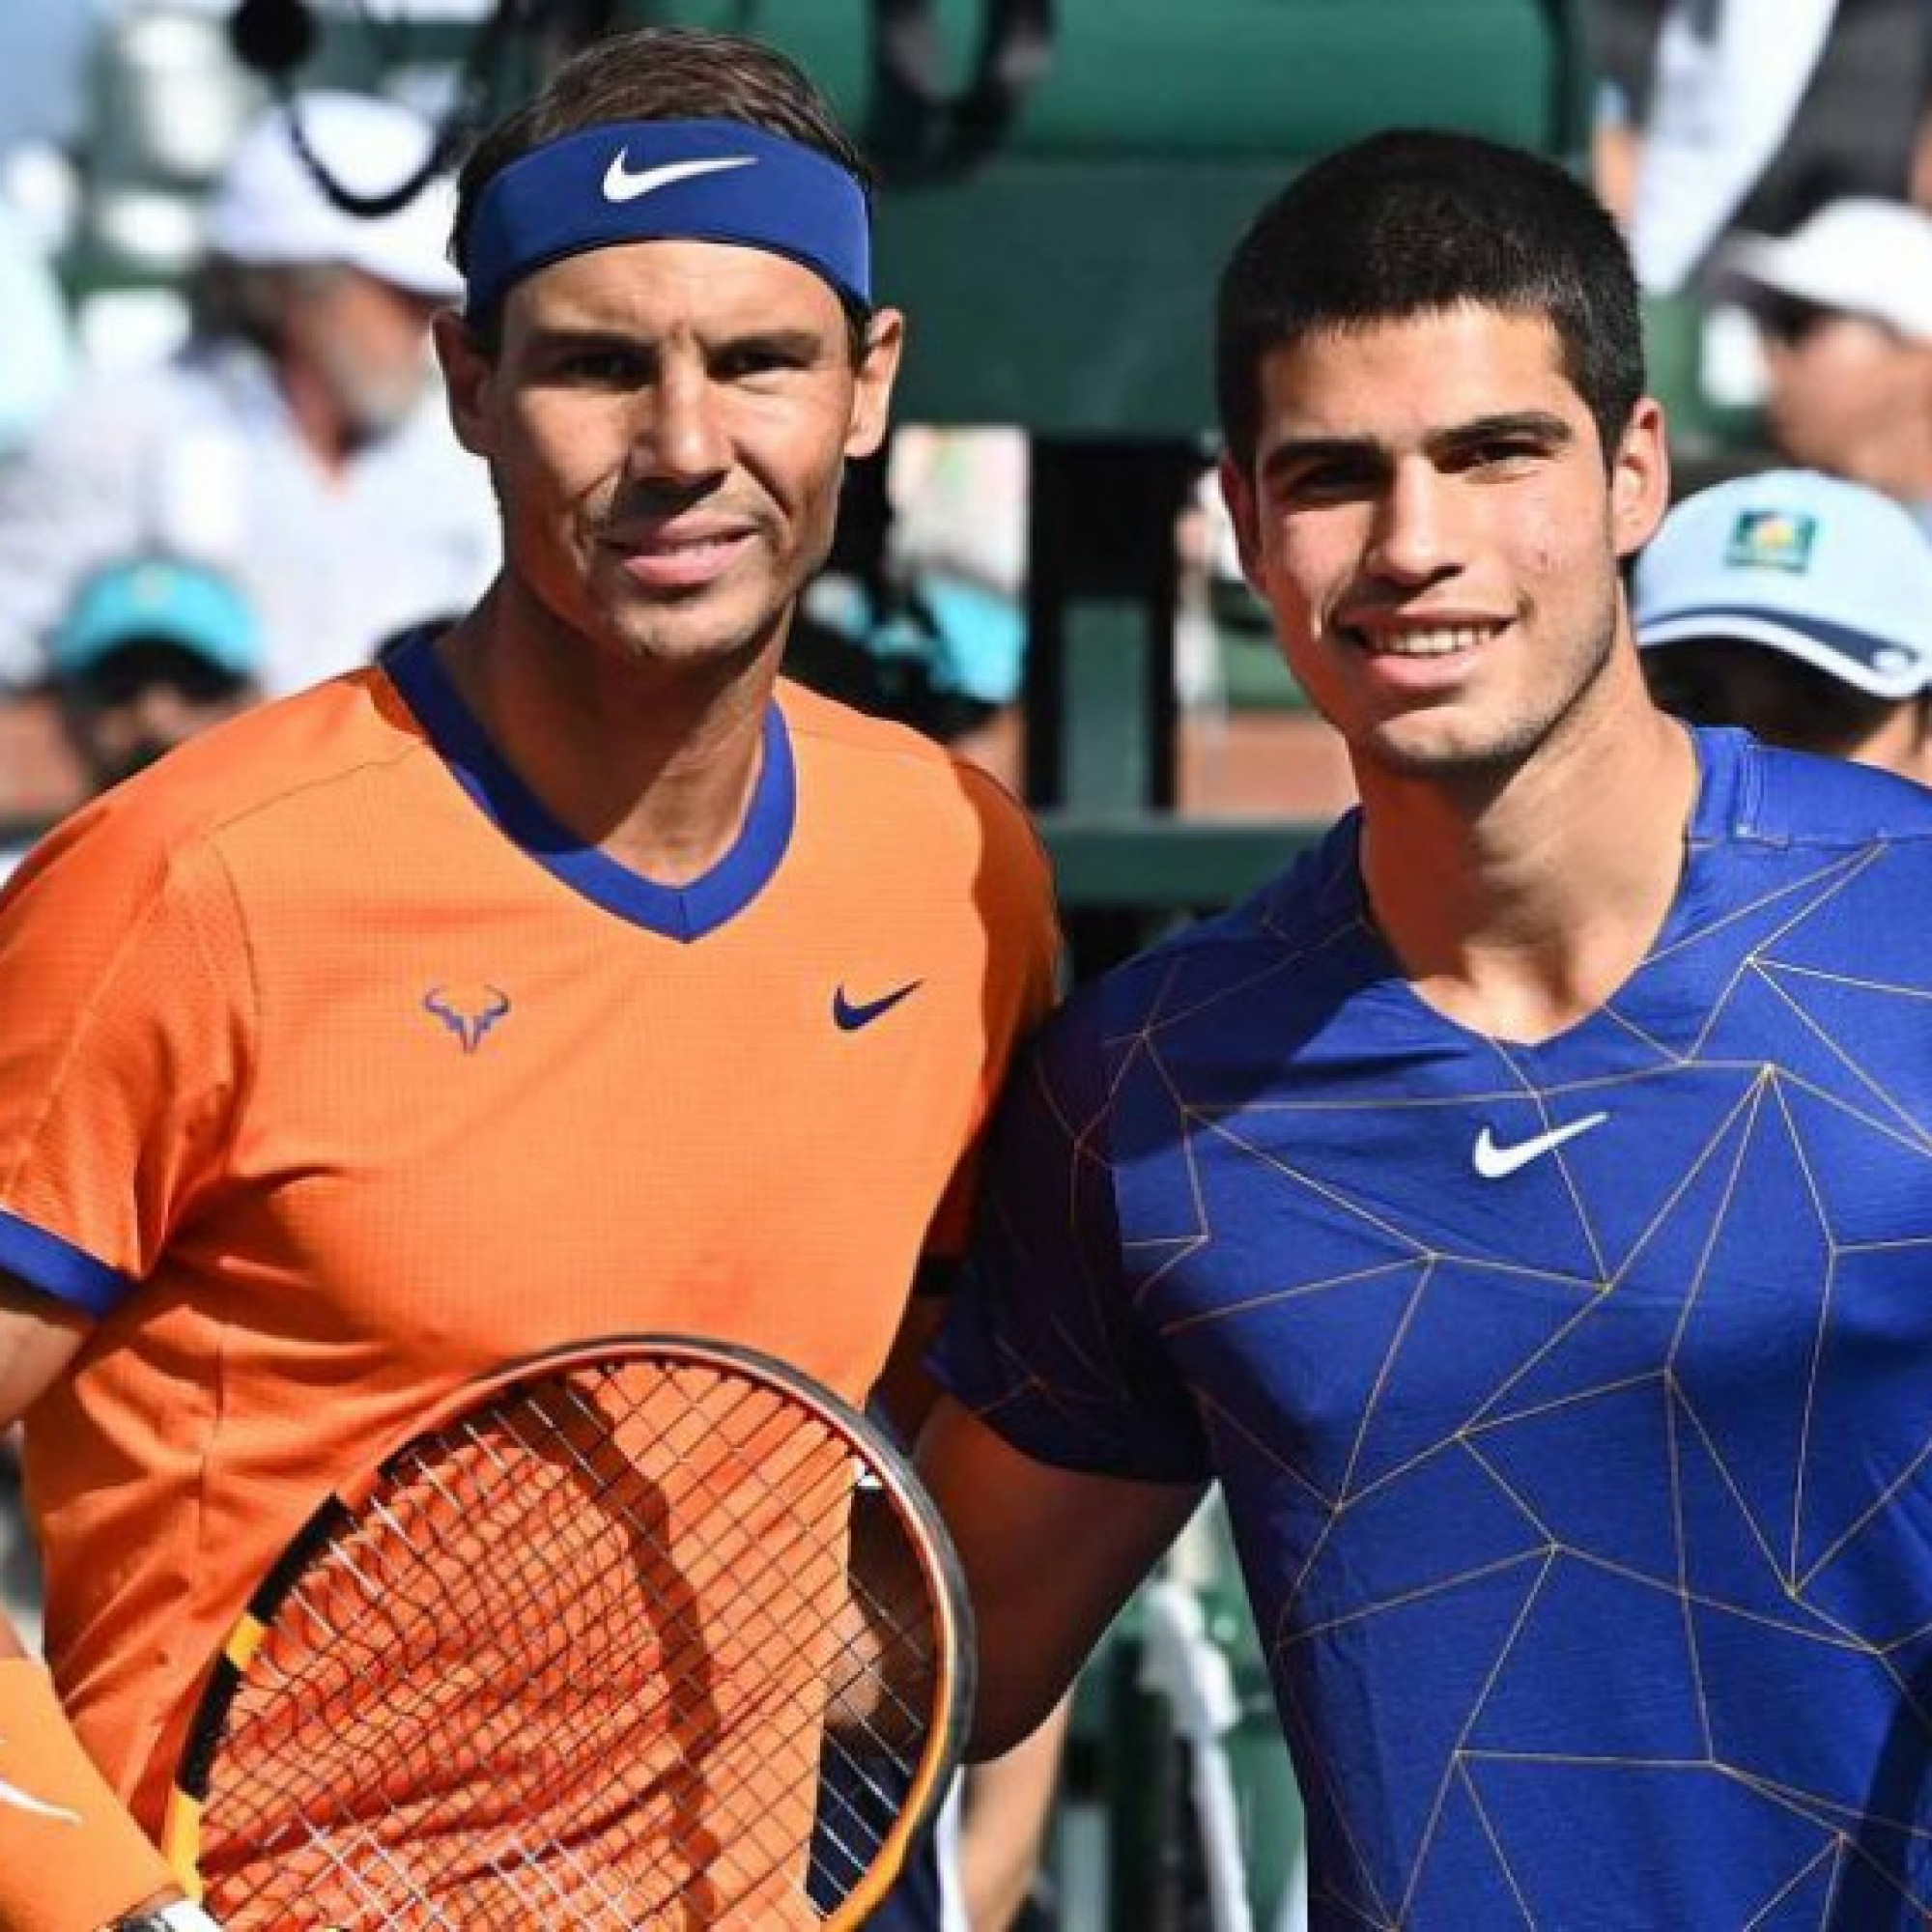  - Nóng nhất thể thao trưa 7/12: Nadal đấu Alcaraz, Djokovic so tài Medvedev